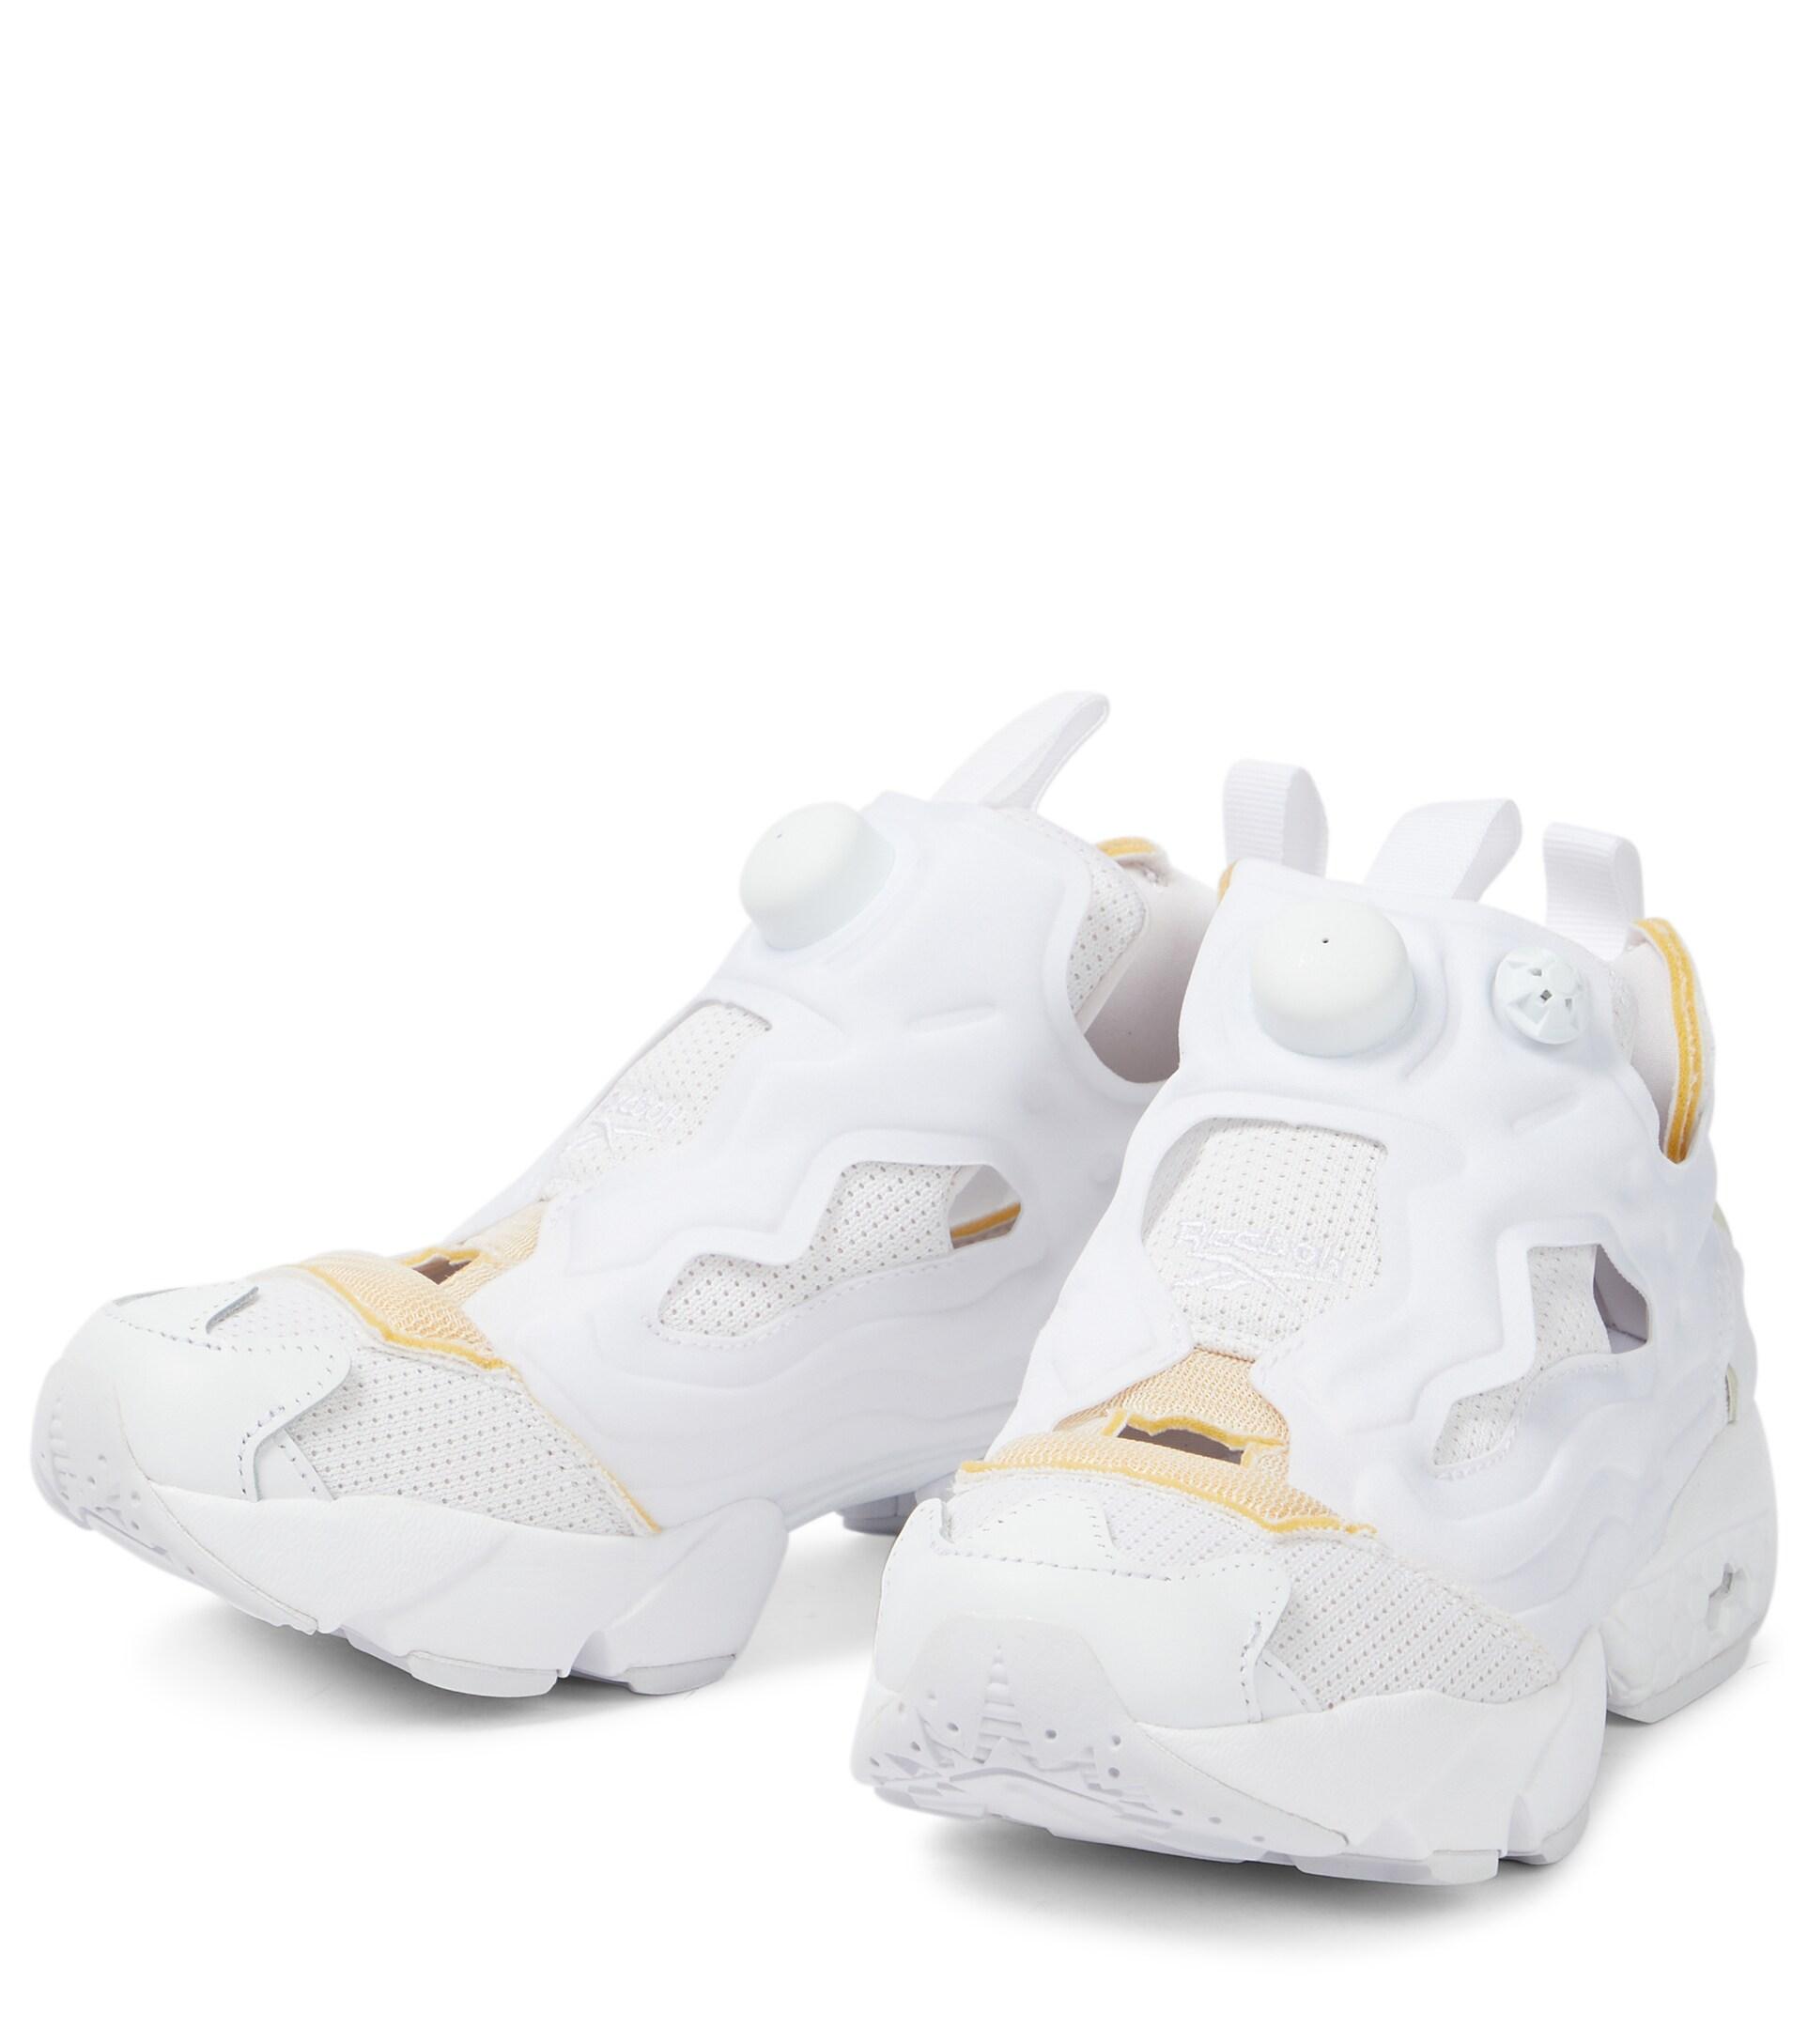 Maison Margiela X Reebok Instapump Fury Sneakers in White | Lyst